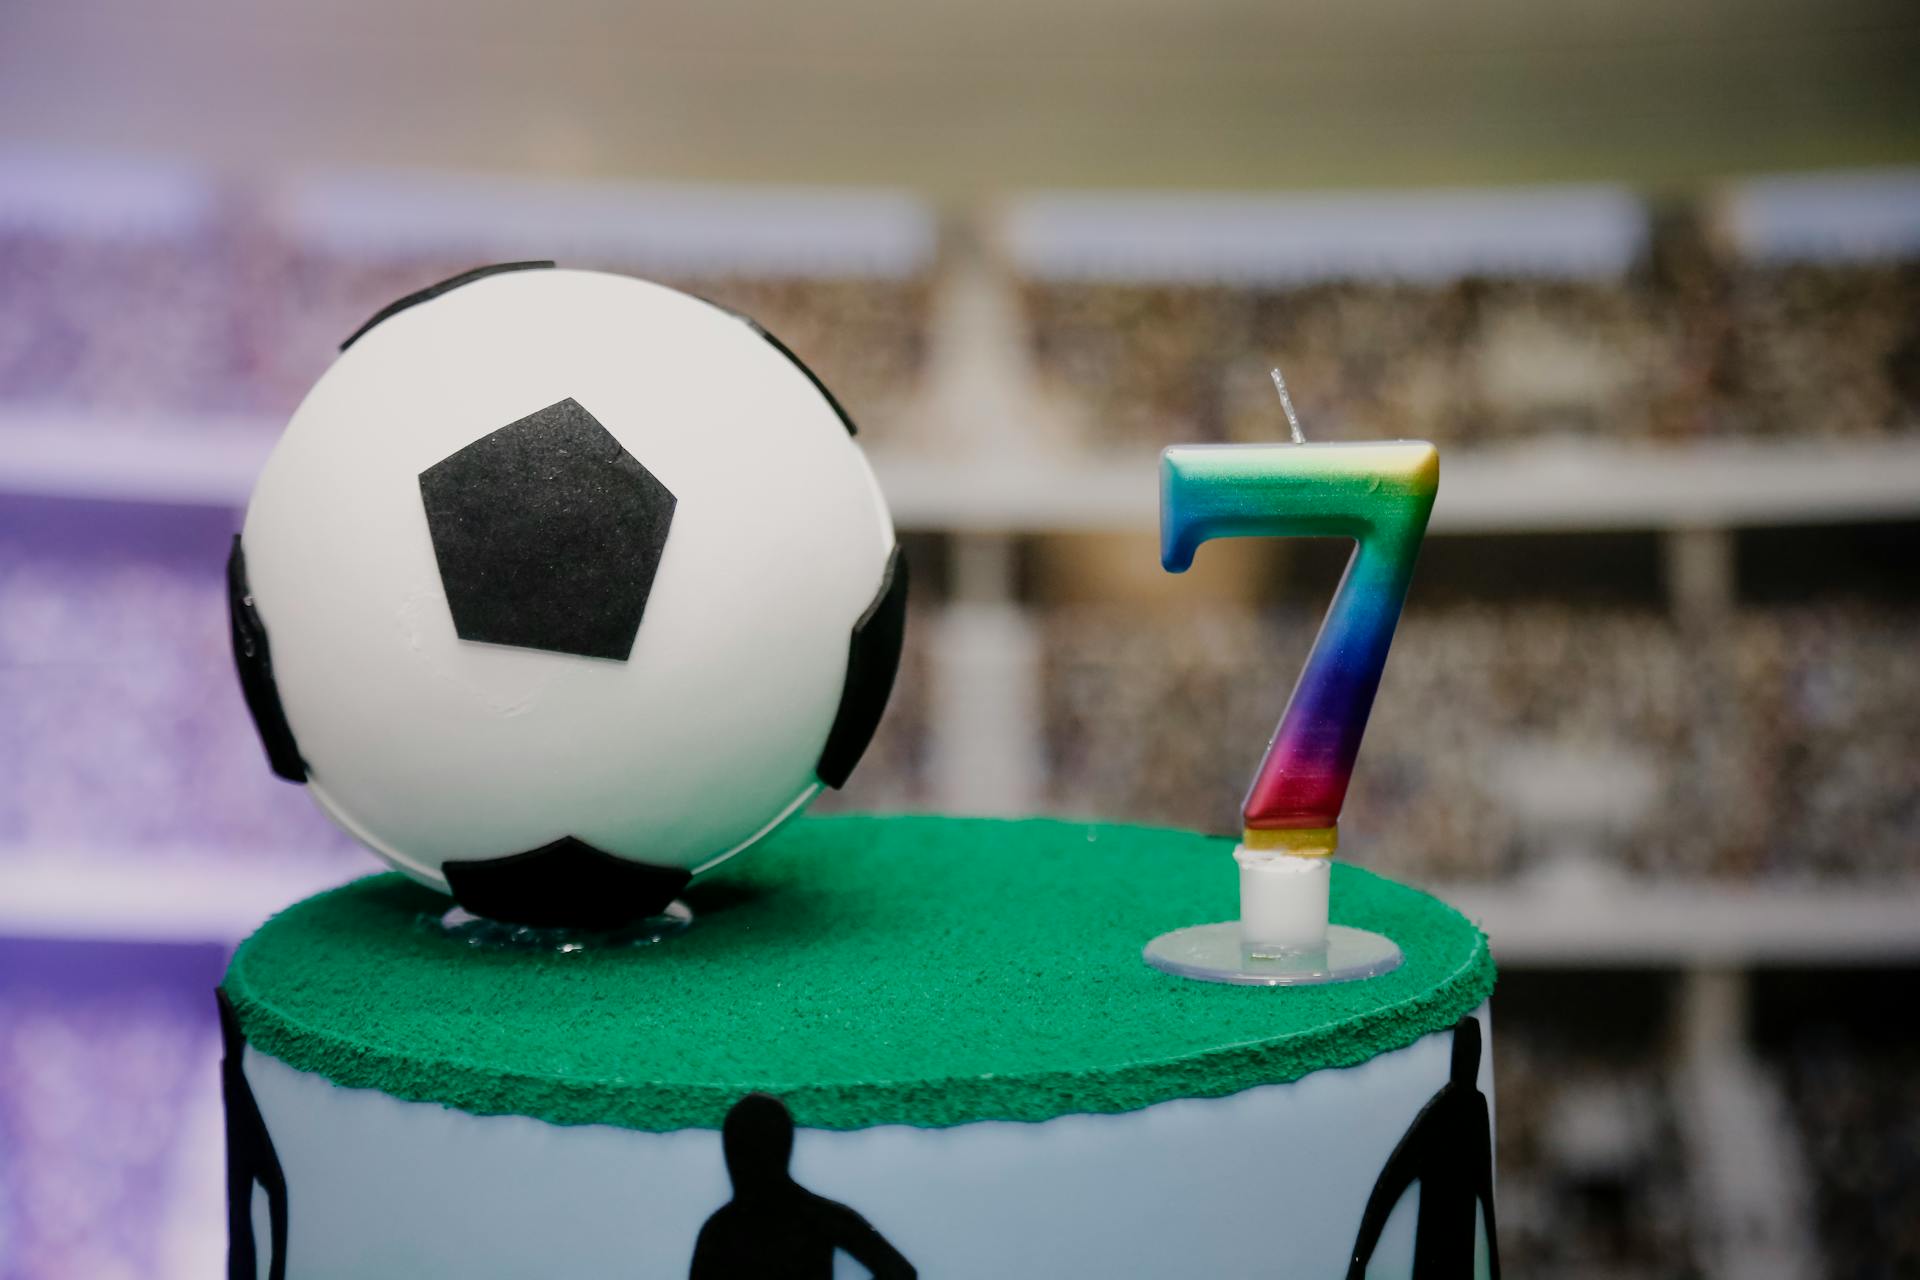 Ein Kuchen zum 7. Geburtstag mit einem Fußball oben drauf | Quelle: Pexels